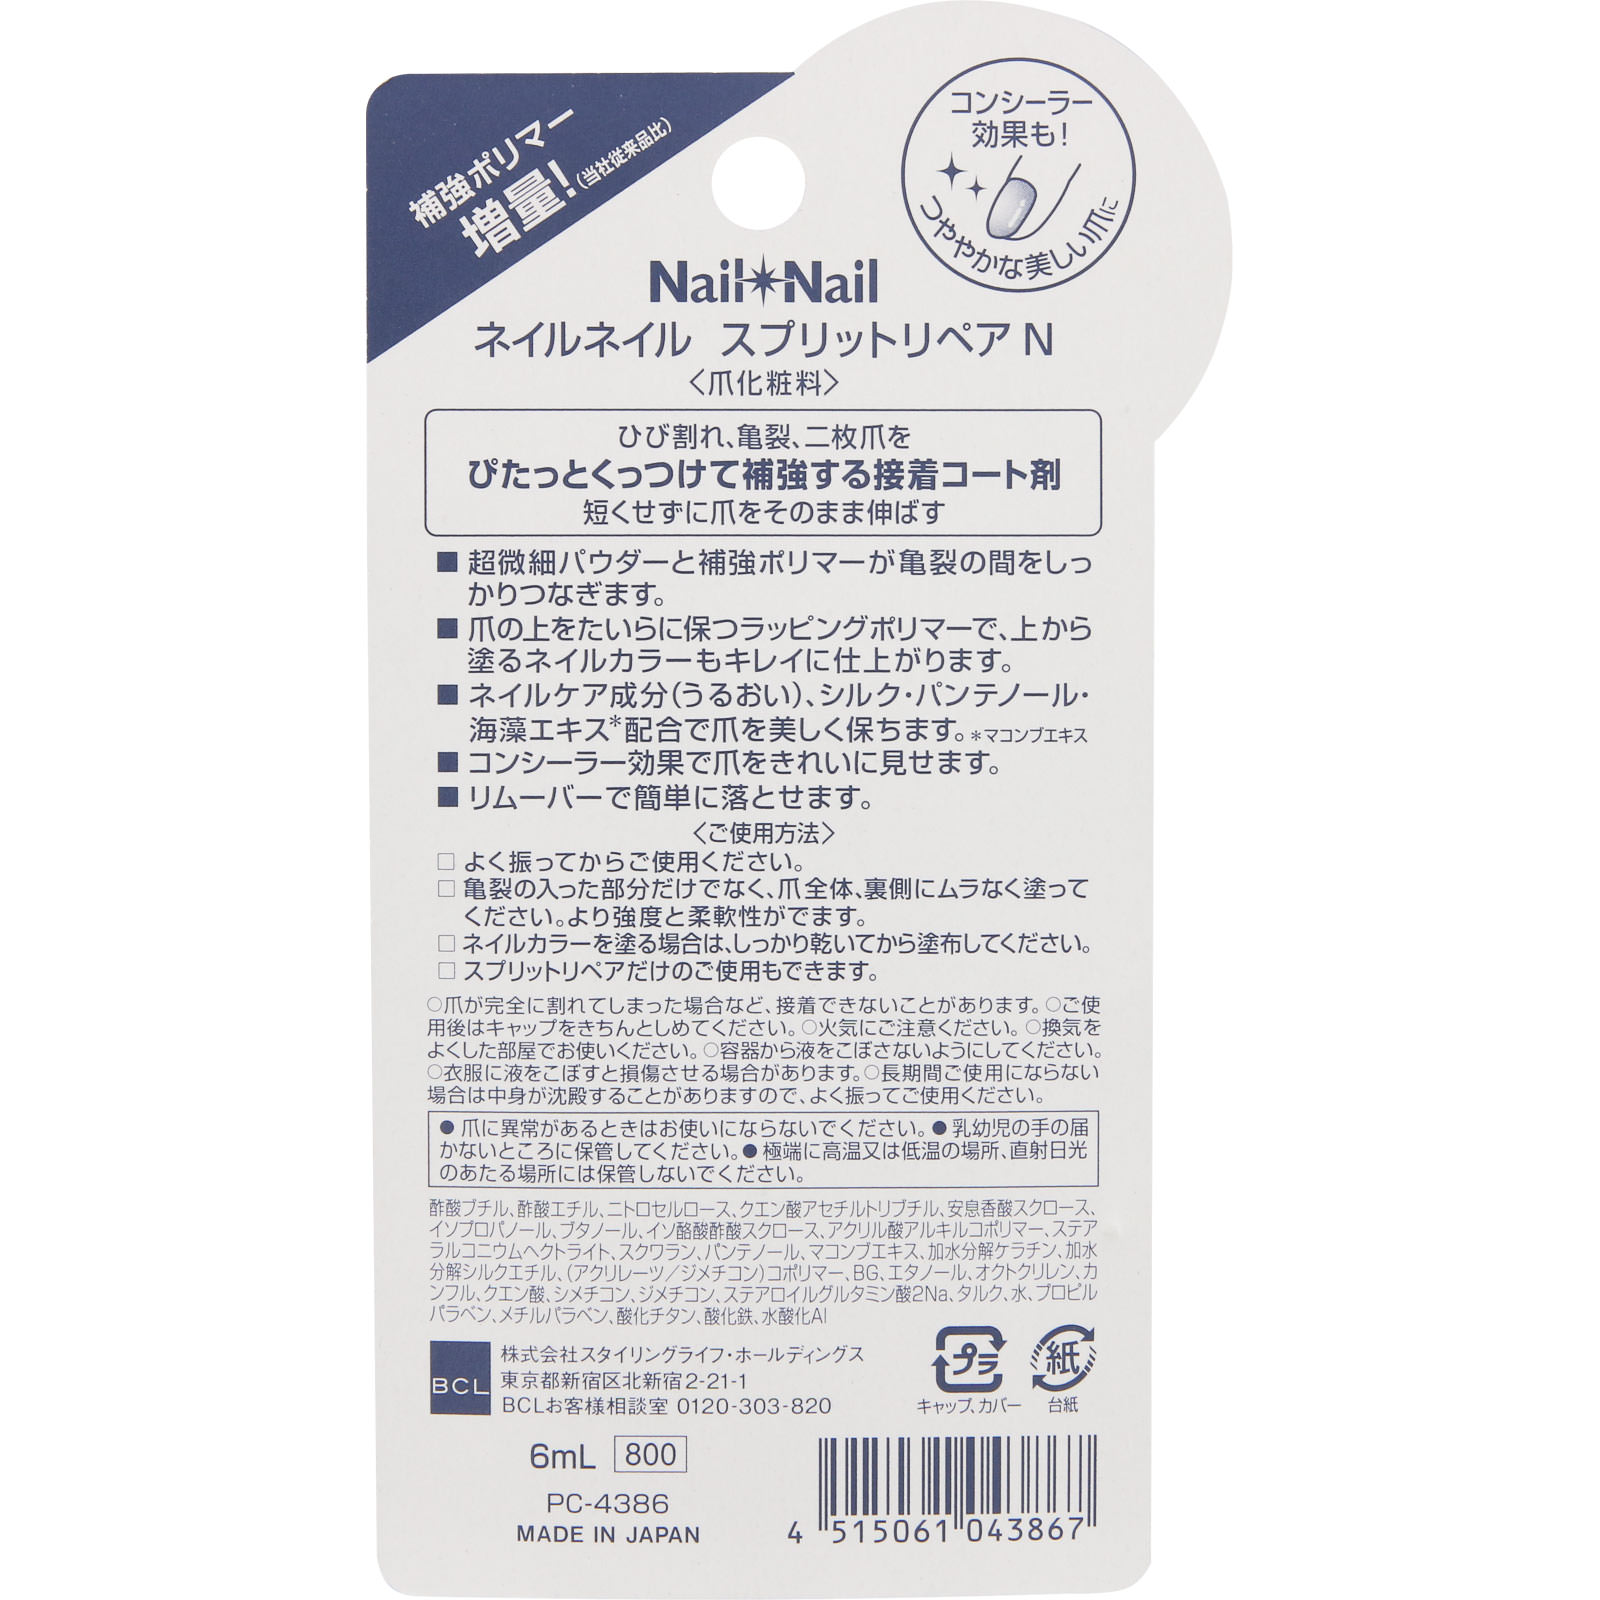 ネイルネイル スプリットリペア Ｎ 6mL: 化粧品 Tomod's ONLINE SHOP